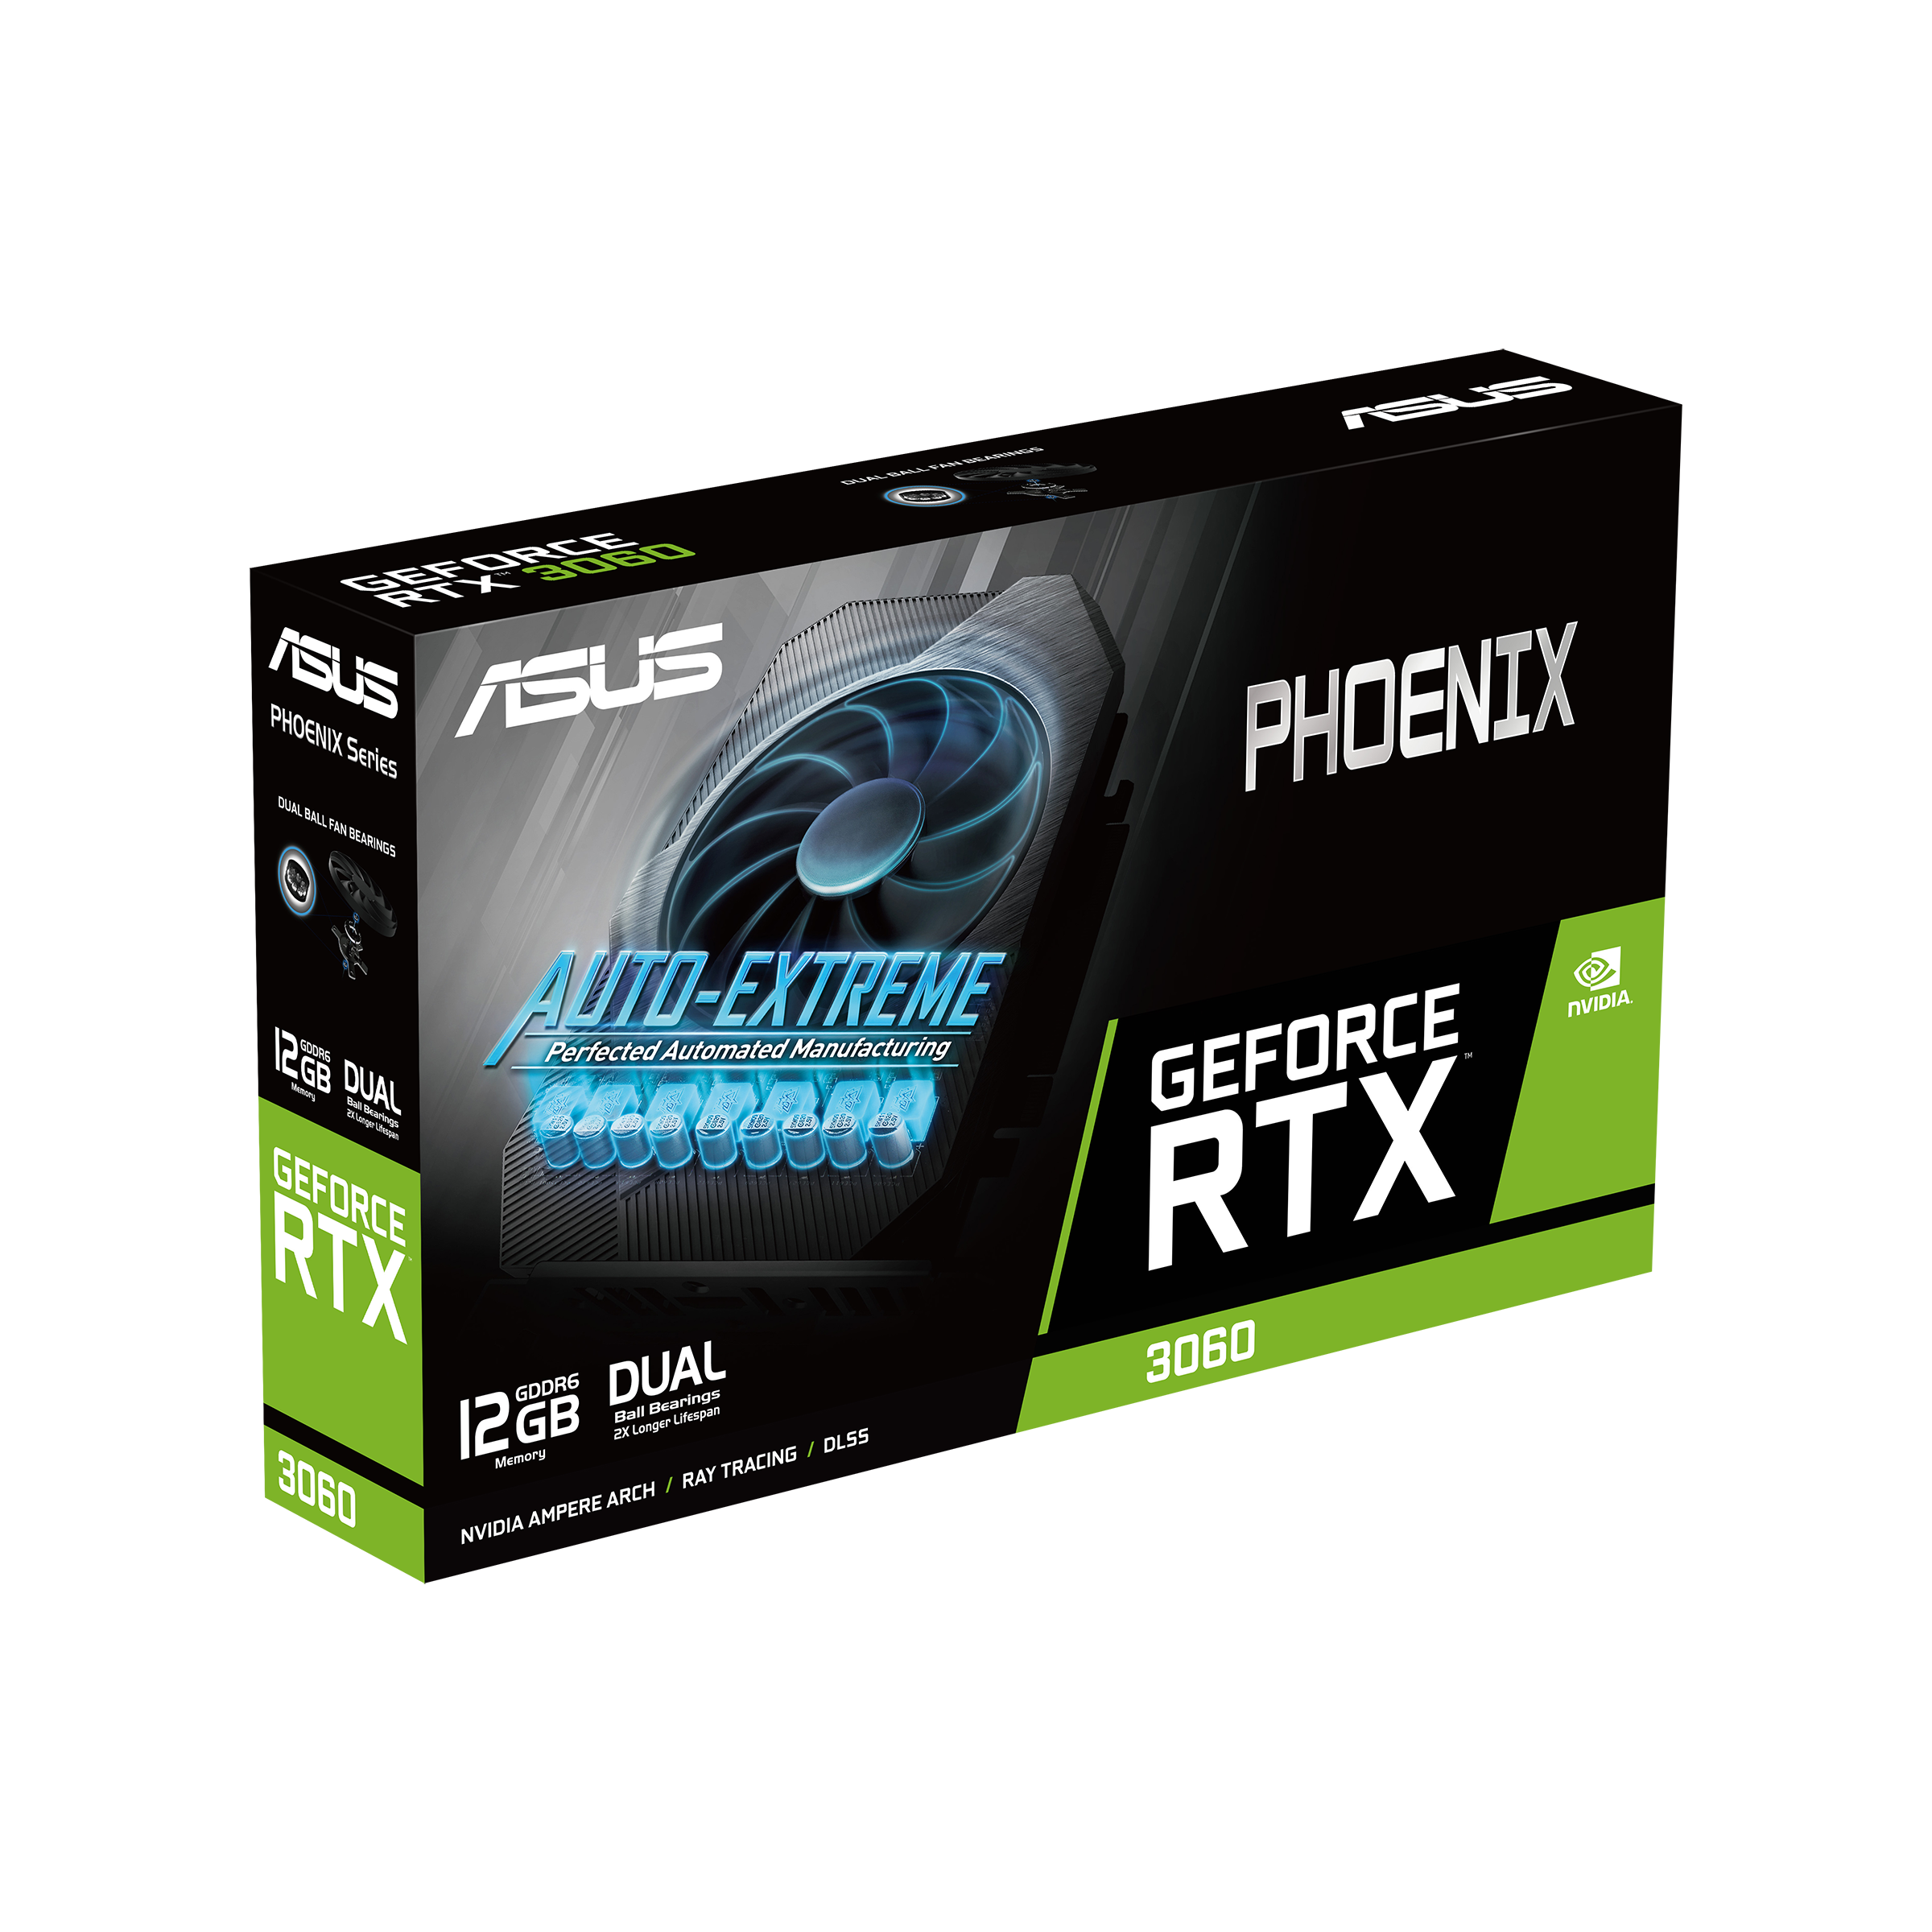 Phoenix GeForce RTX 3060 V2 12GB【ジャンク品】